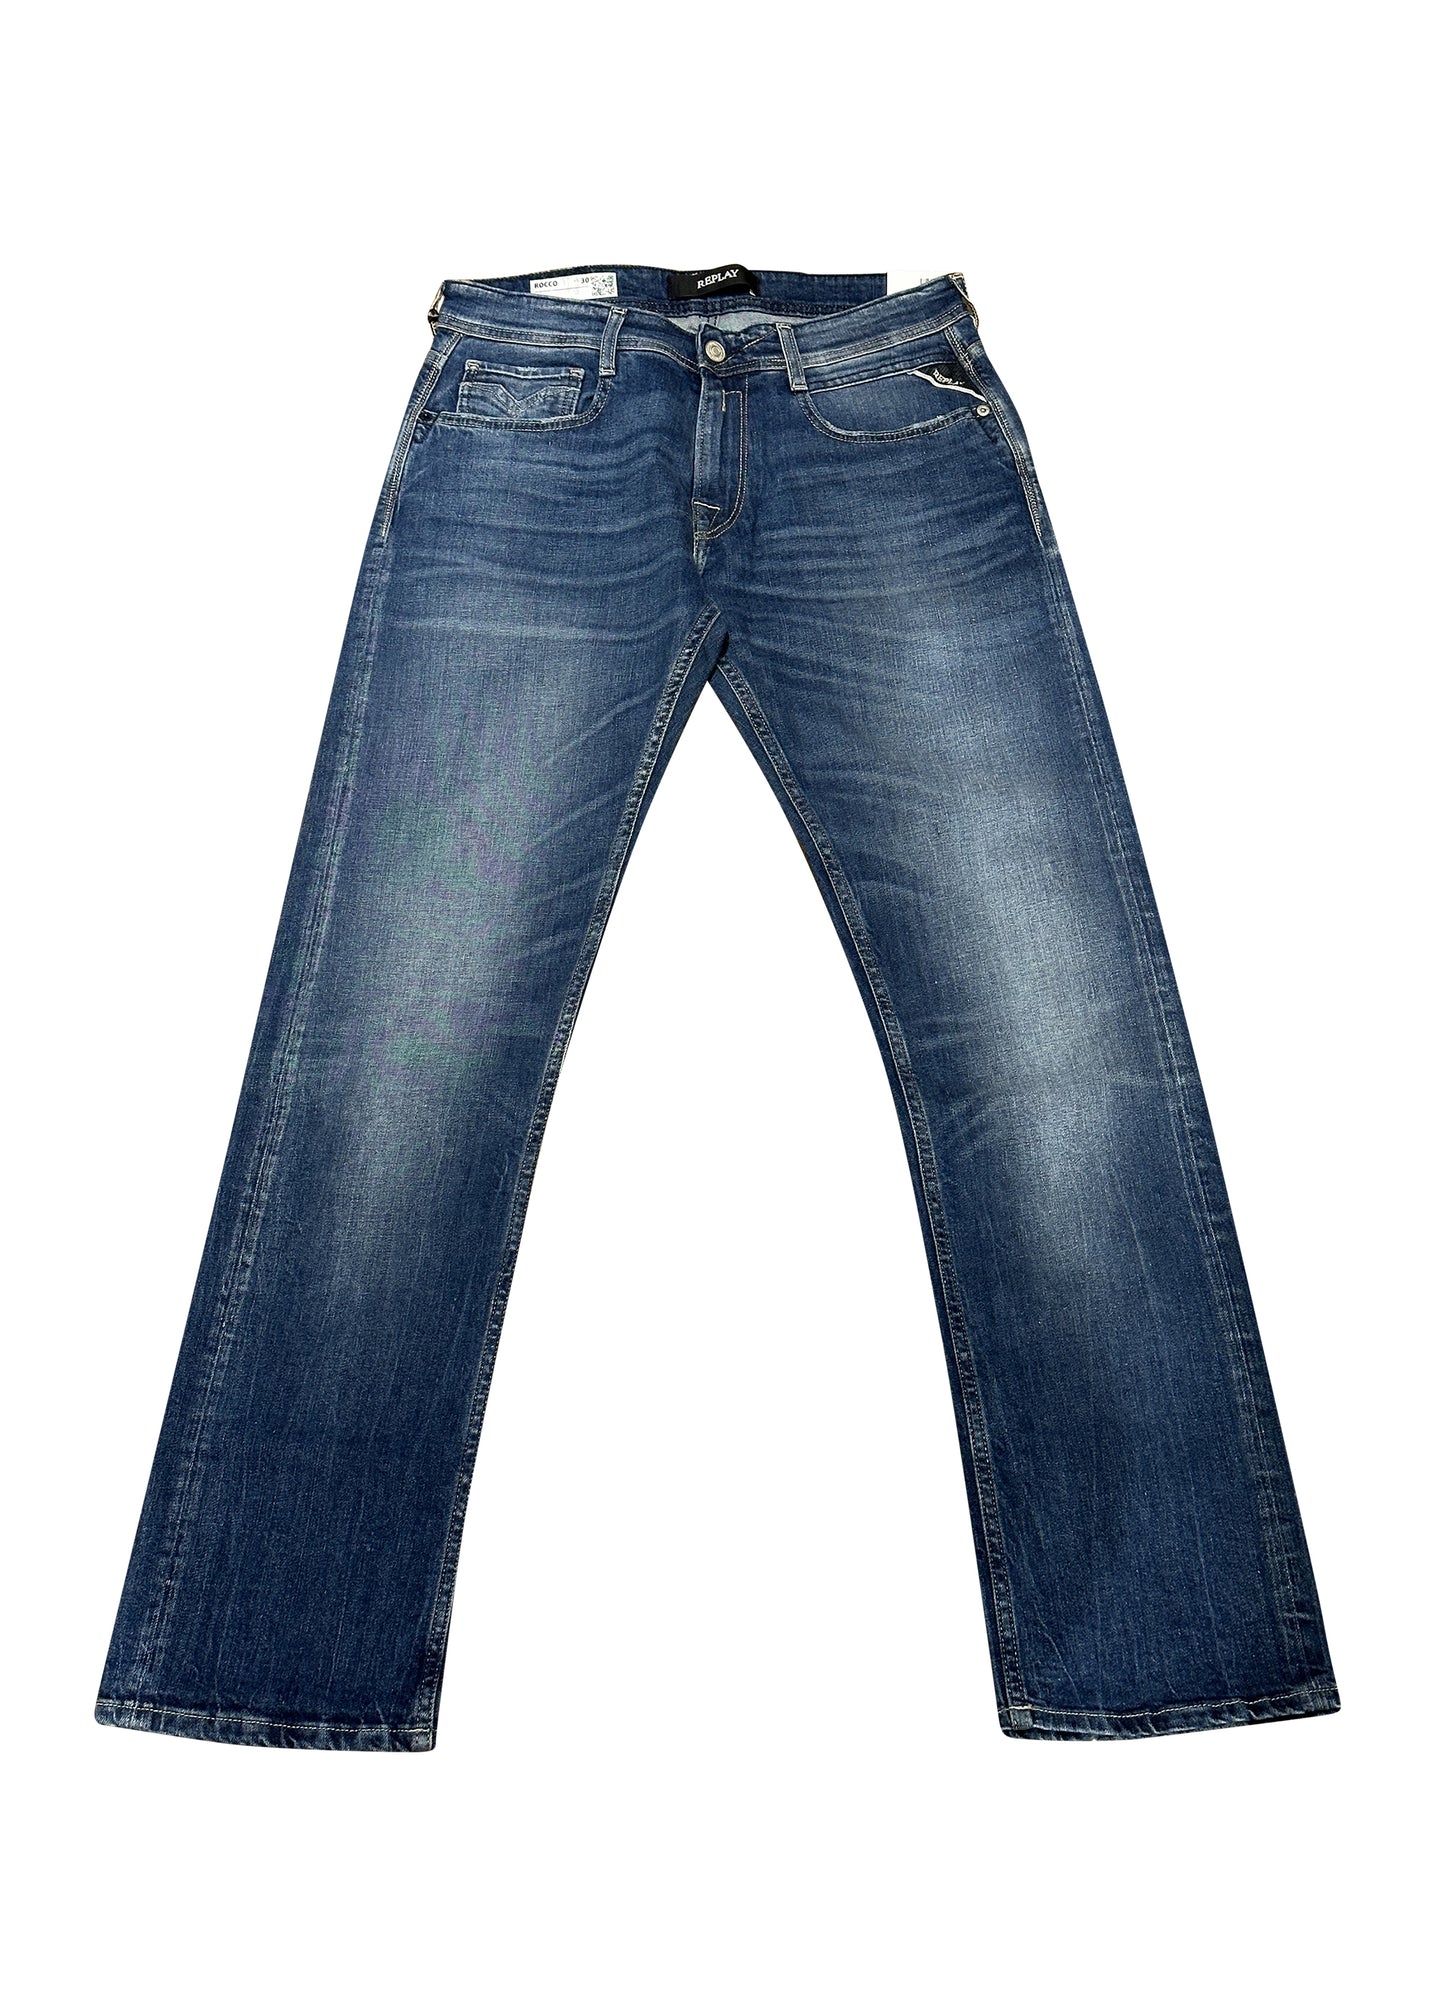 Replay - 573 Rocco 5 Pocket Jeans - 200179 - Denim